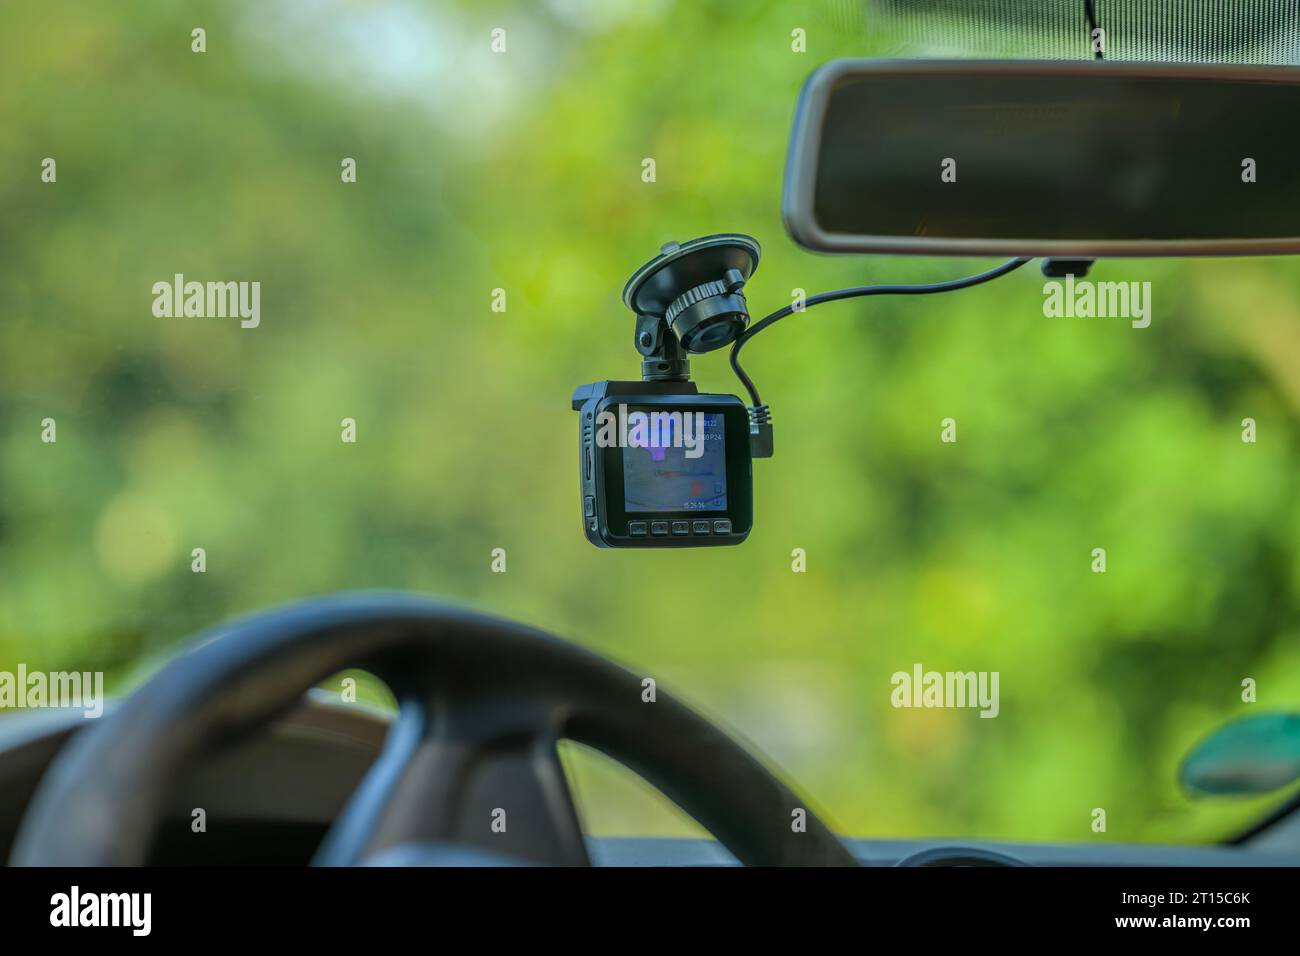 Une dashcam sur le pare-brise d'une voiture Banque D'Images